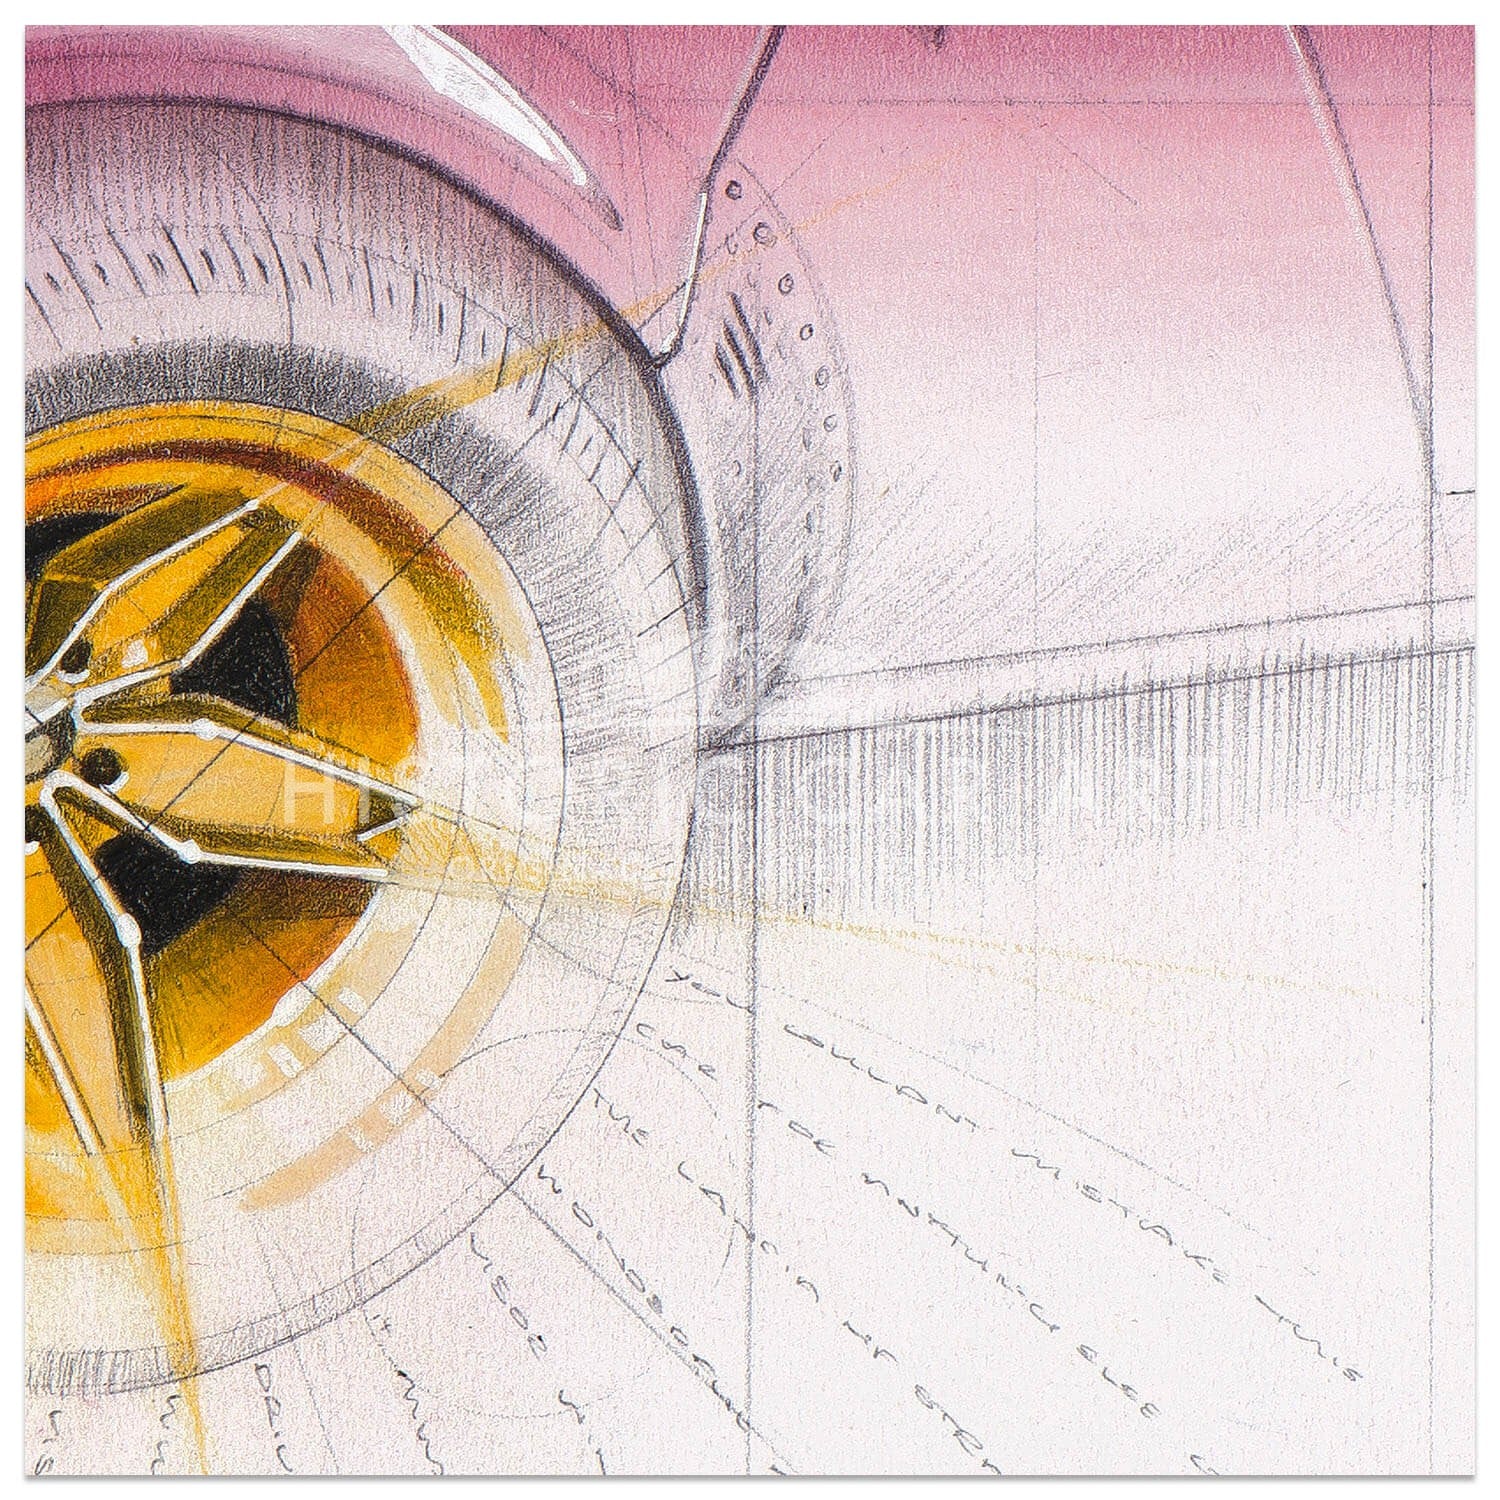 Lancia Stratos | Art Print